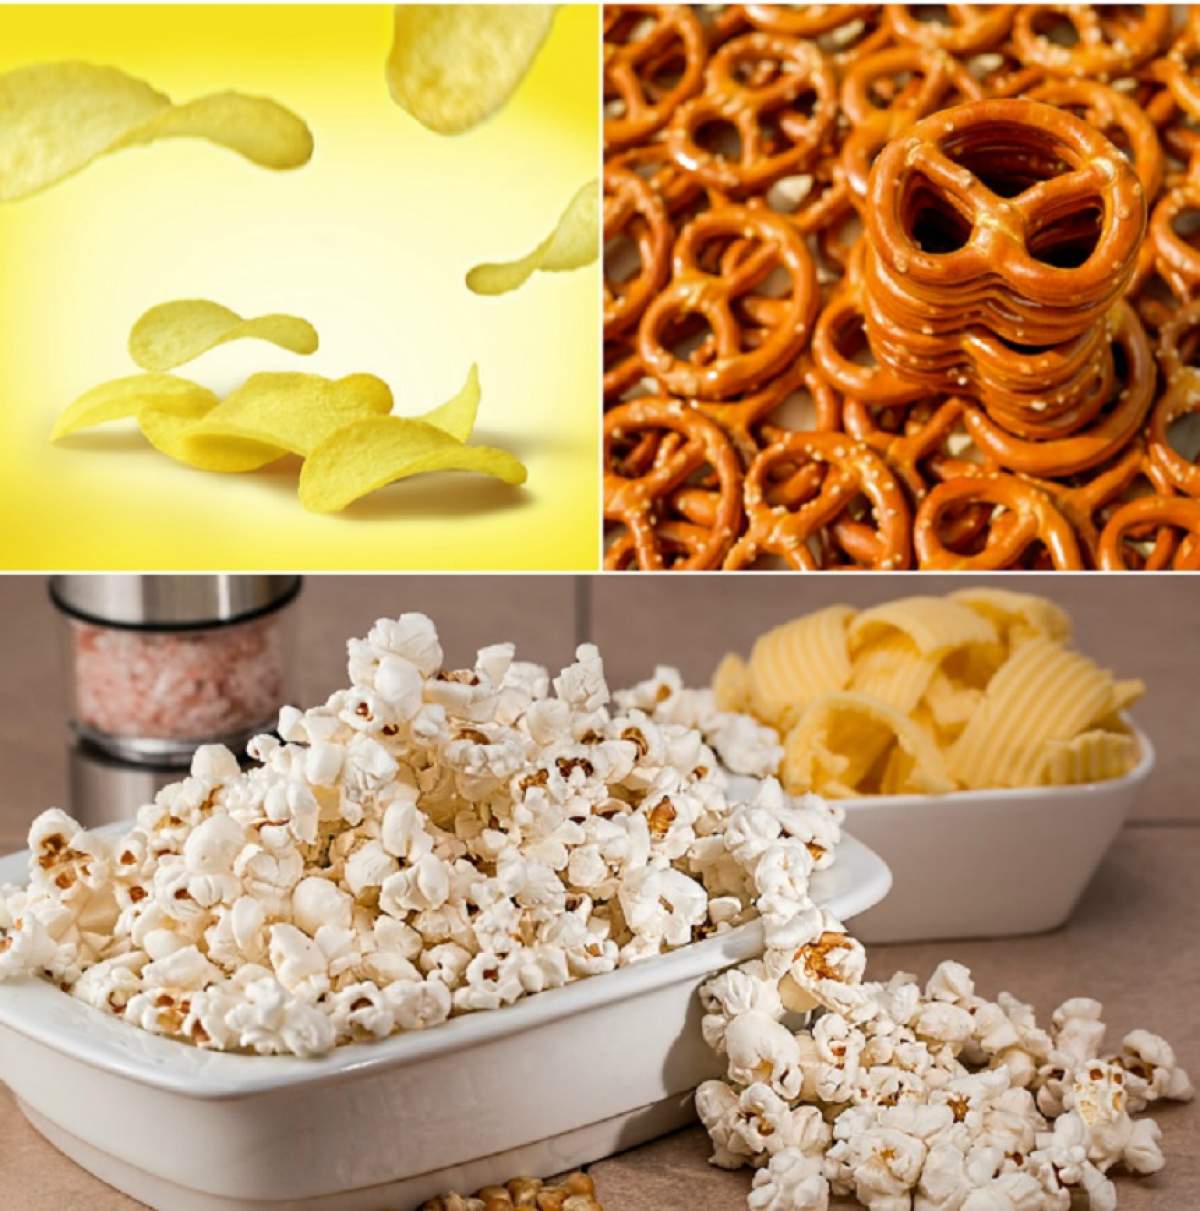 ÎNTREBAREA ZILEI: Cu ce poţi înlocui chipsurile, sticks-urile şi popcornul? Cele mai recomandate gustări